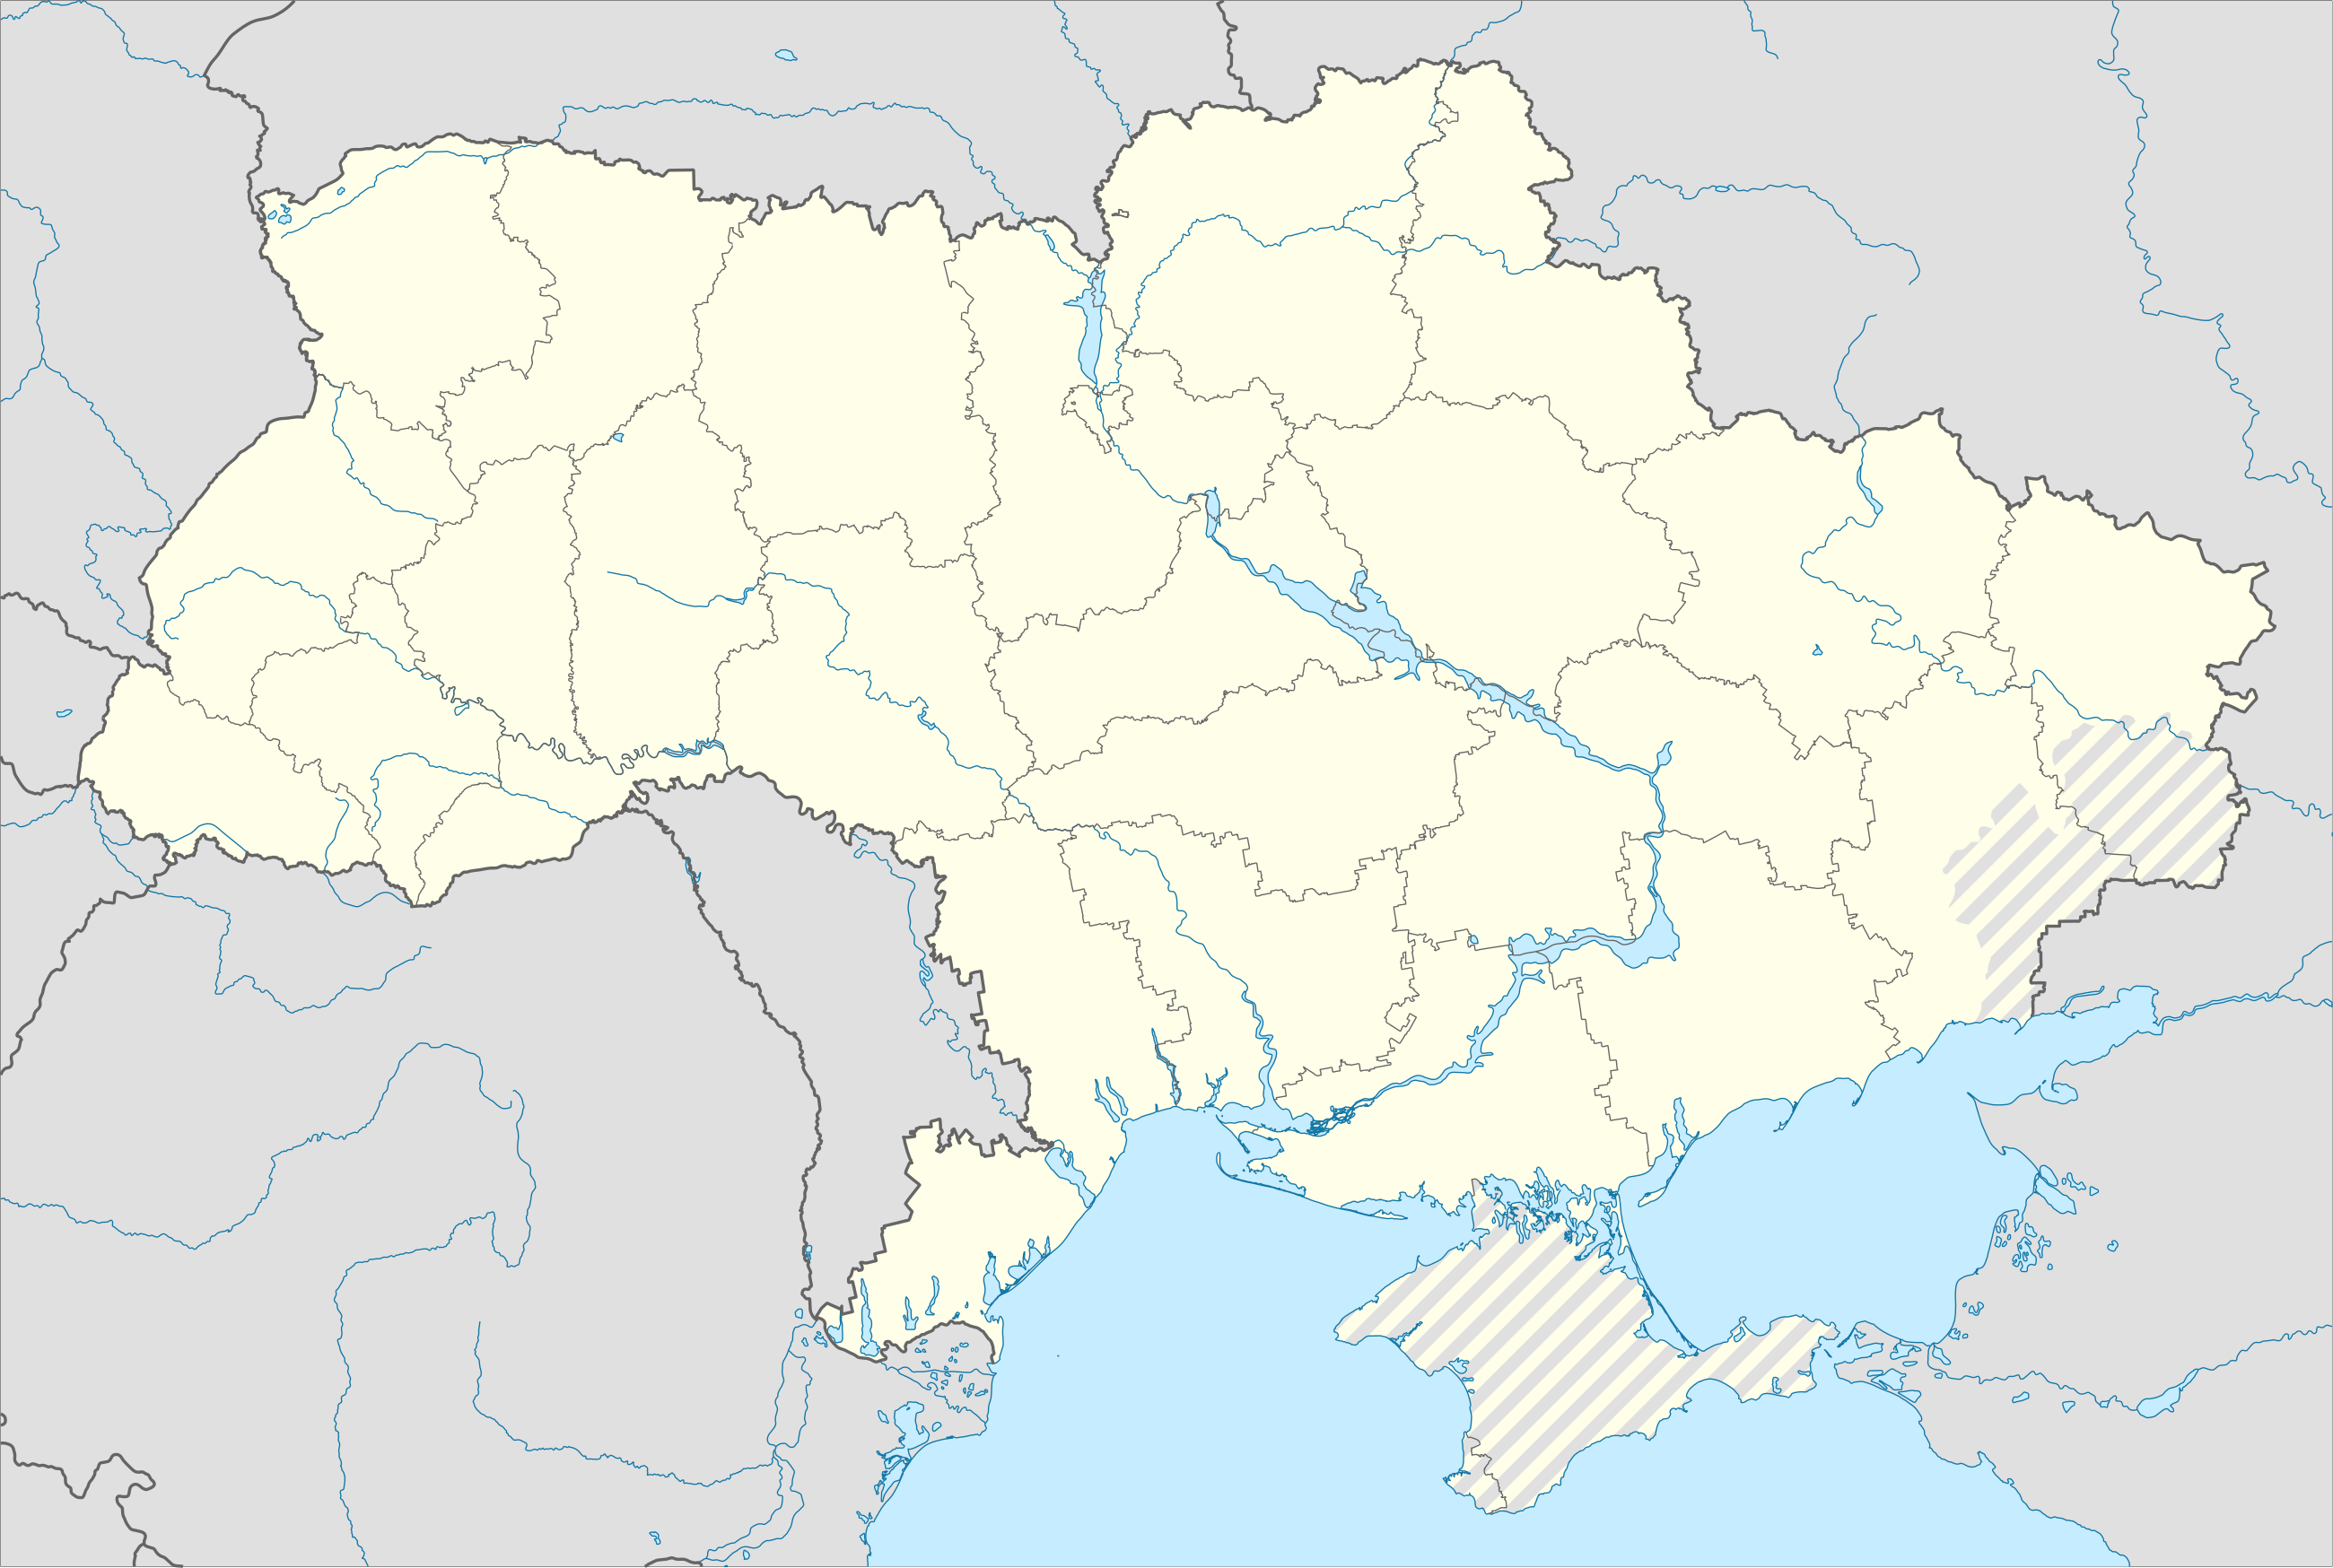 Russo-Ukrainian War detailed map/sandbox is located in Ukraine